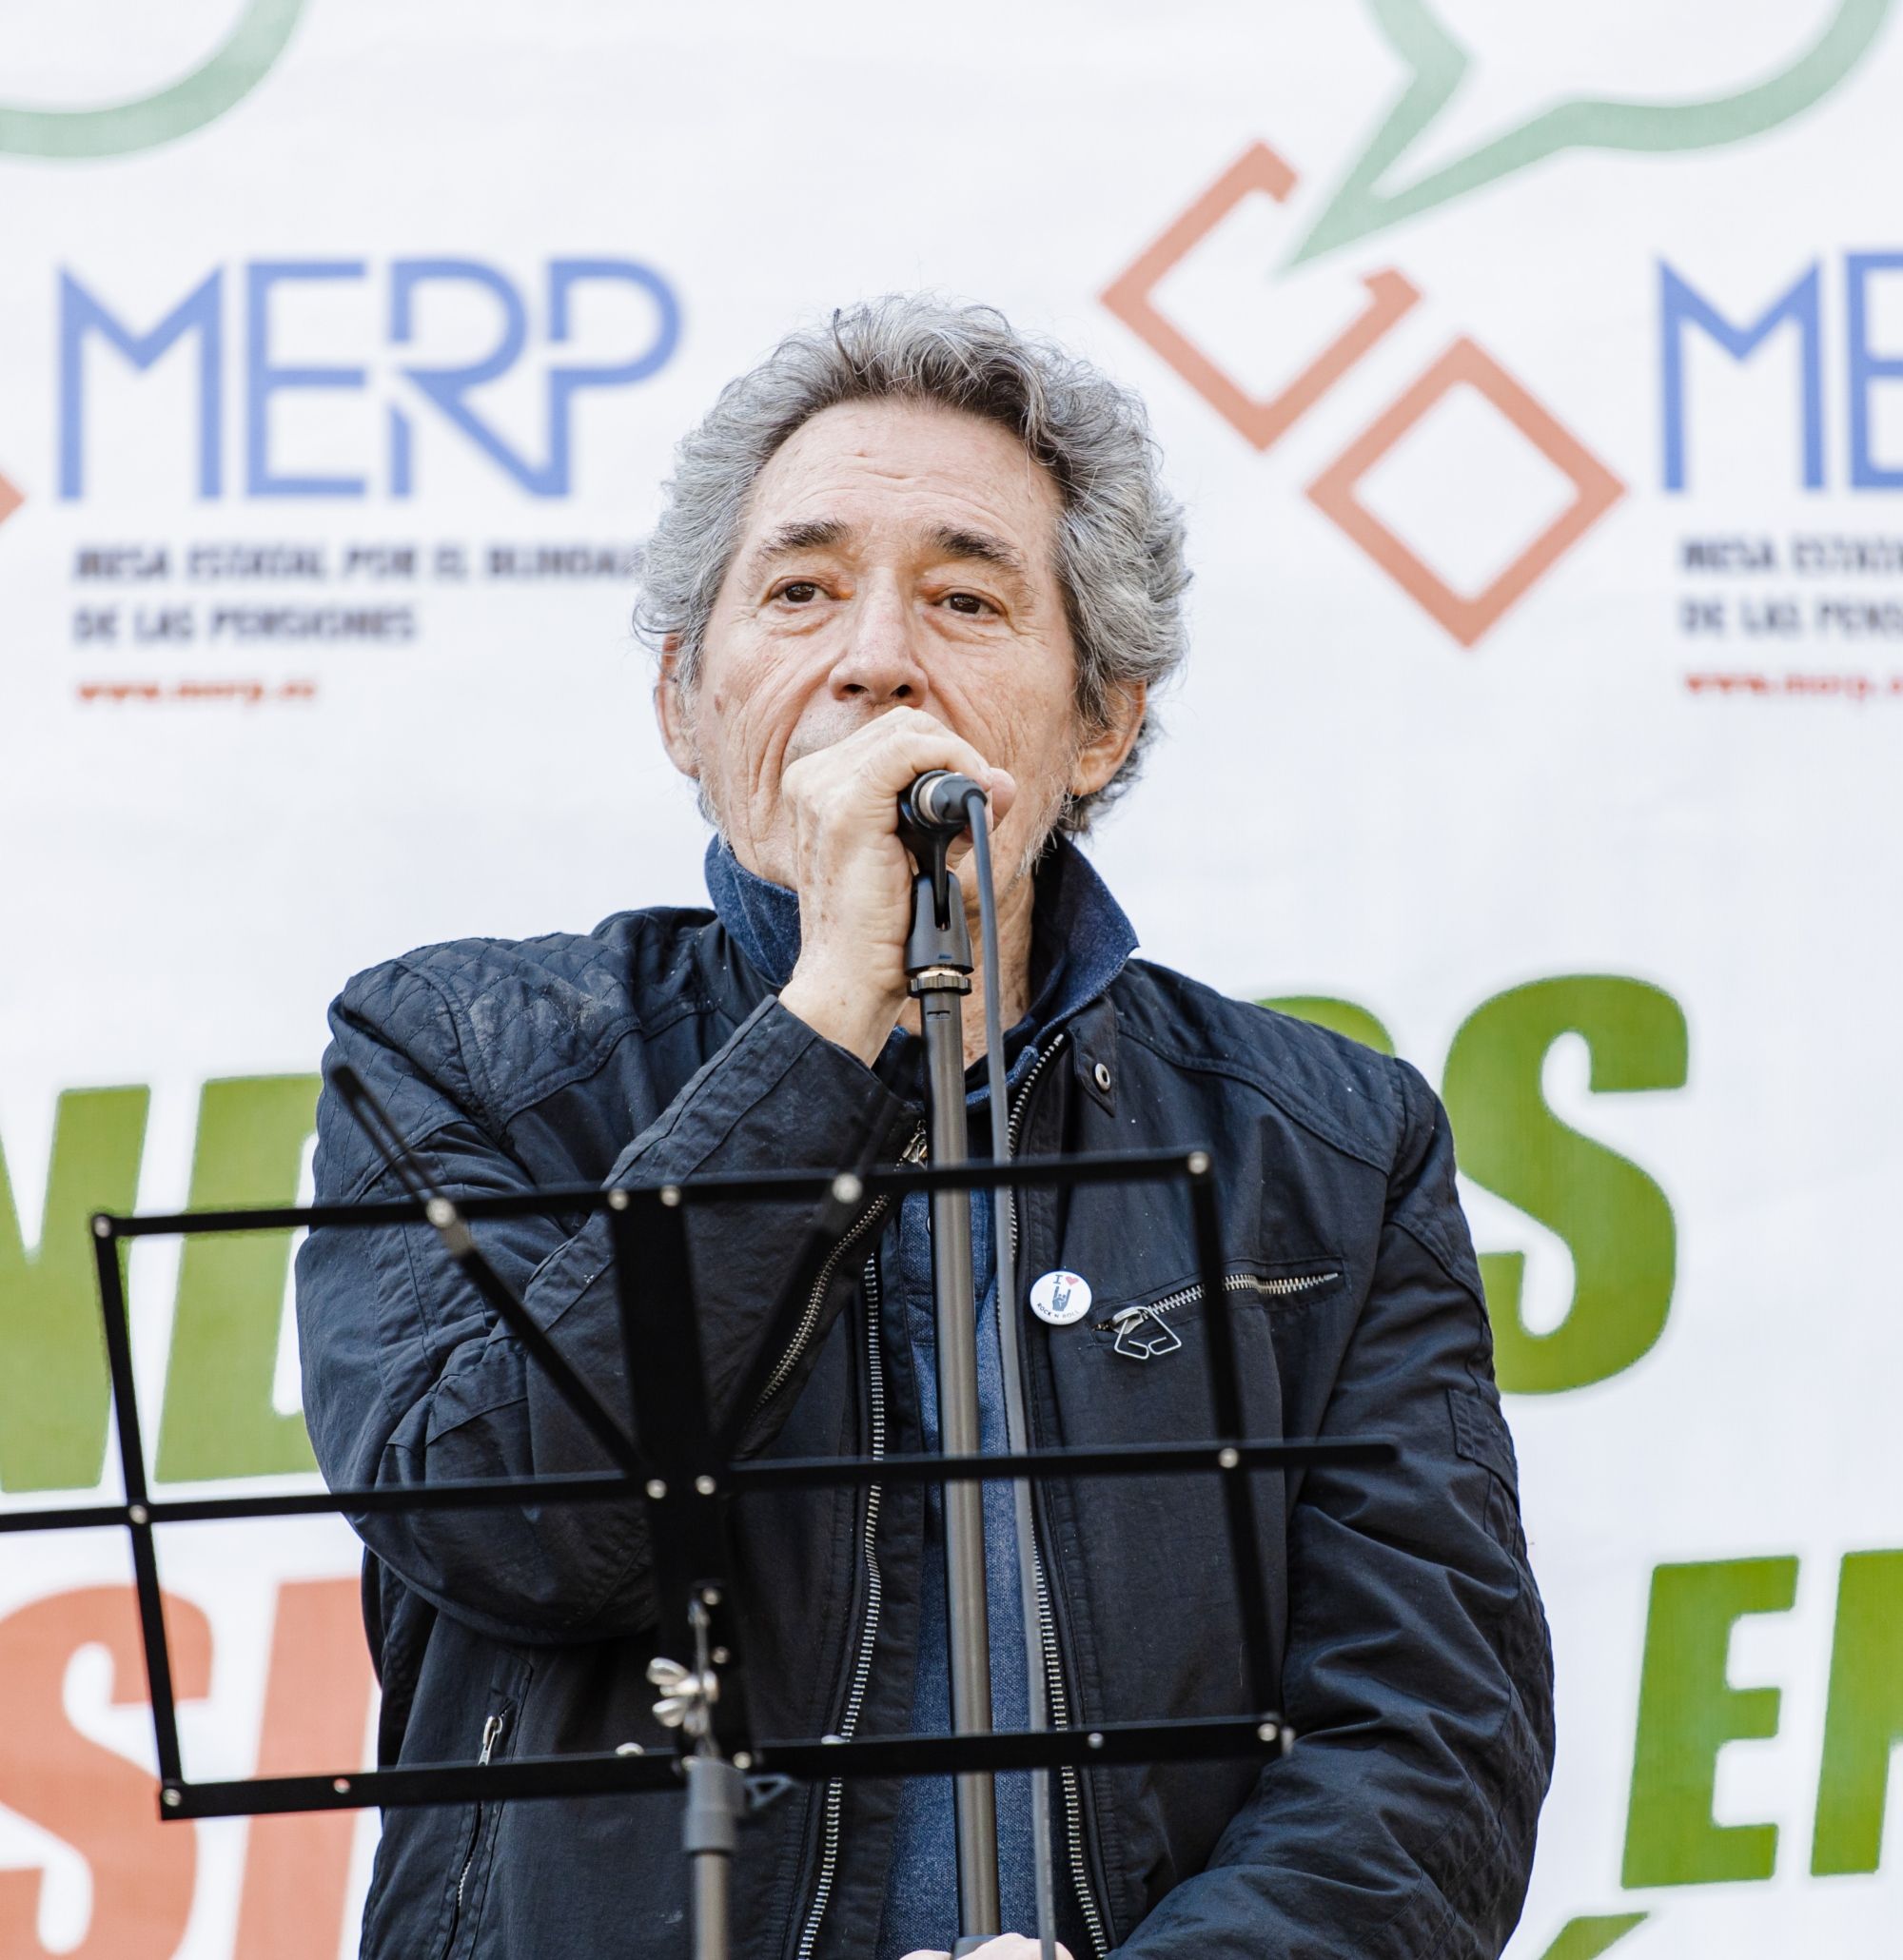 Miguel Ríos apoya la manifestación para blindar las pensiones: "Somos 47 millones"